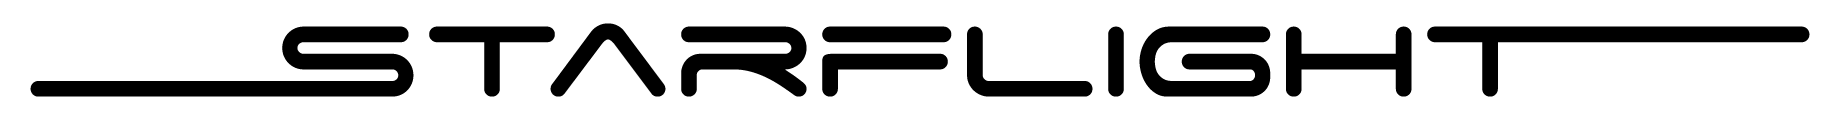 Starflight Logo